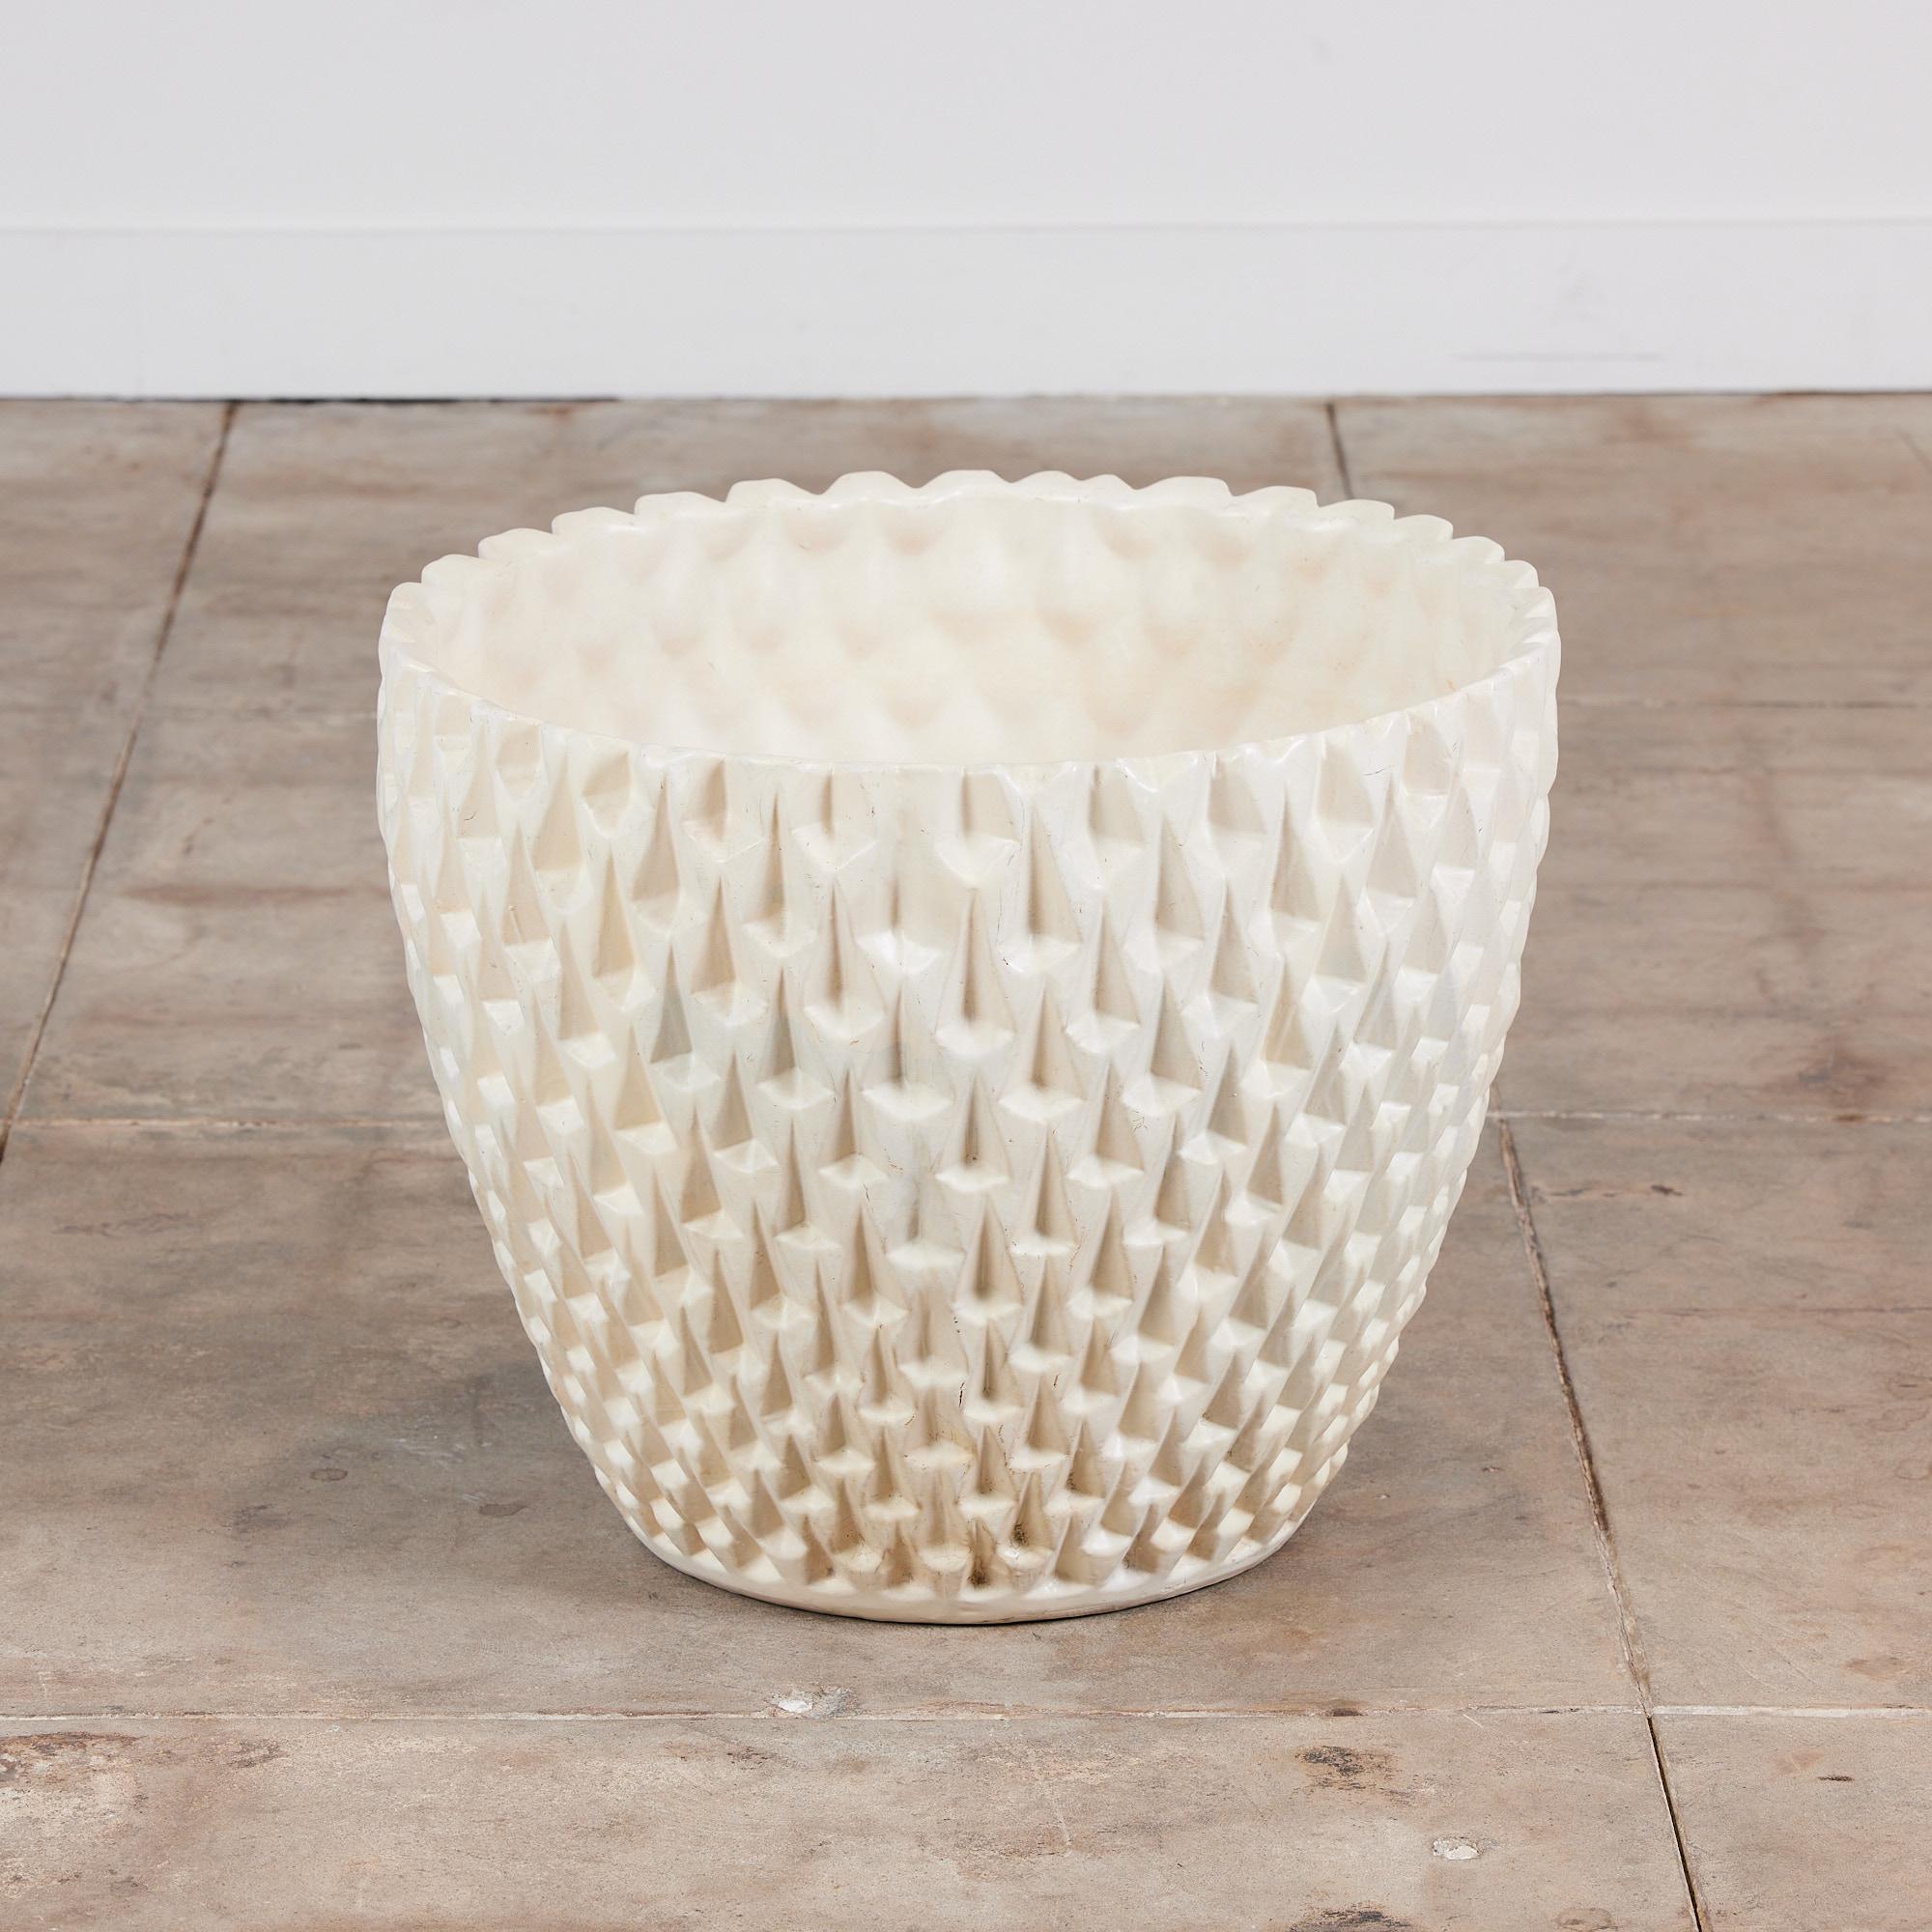 Céramique Jardinière Phoenix-1 de David Cressey en glaçure blanche pour la poterie architecturale en vente